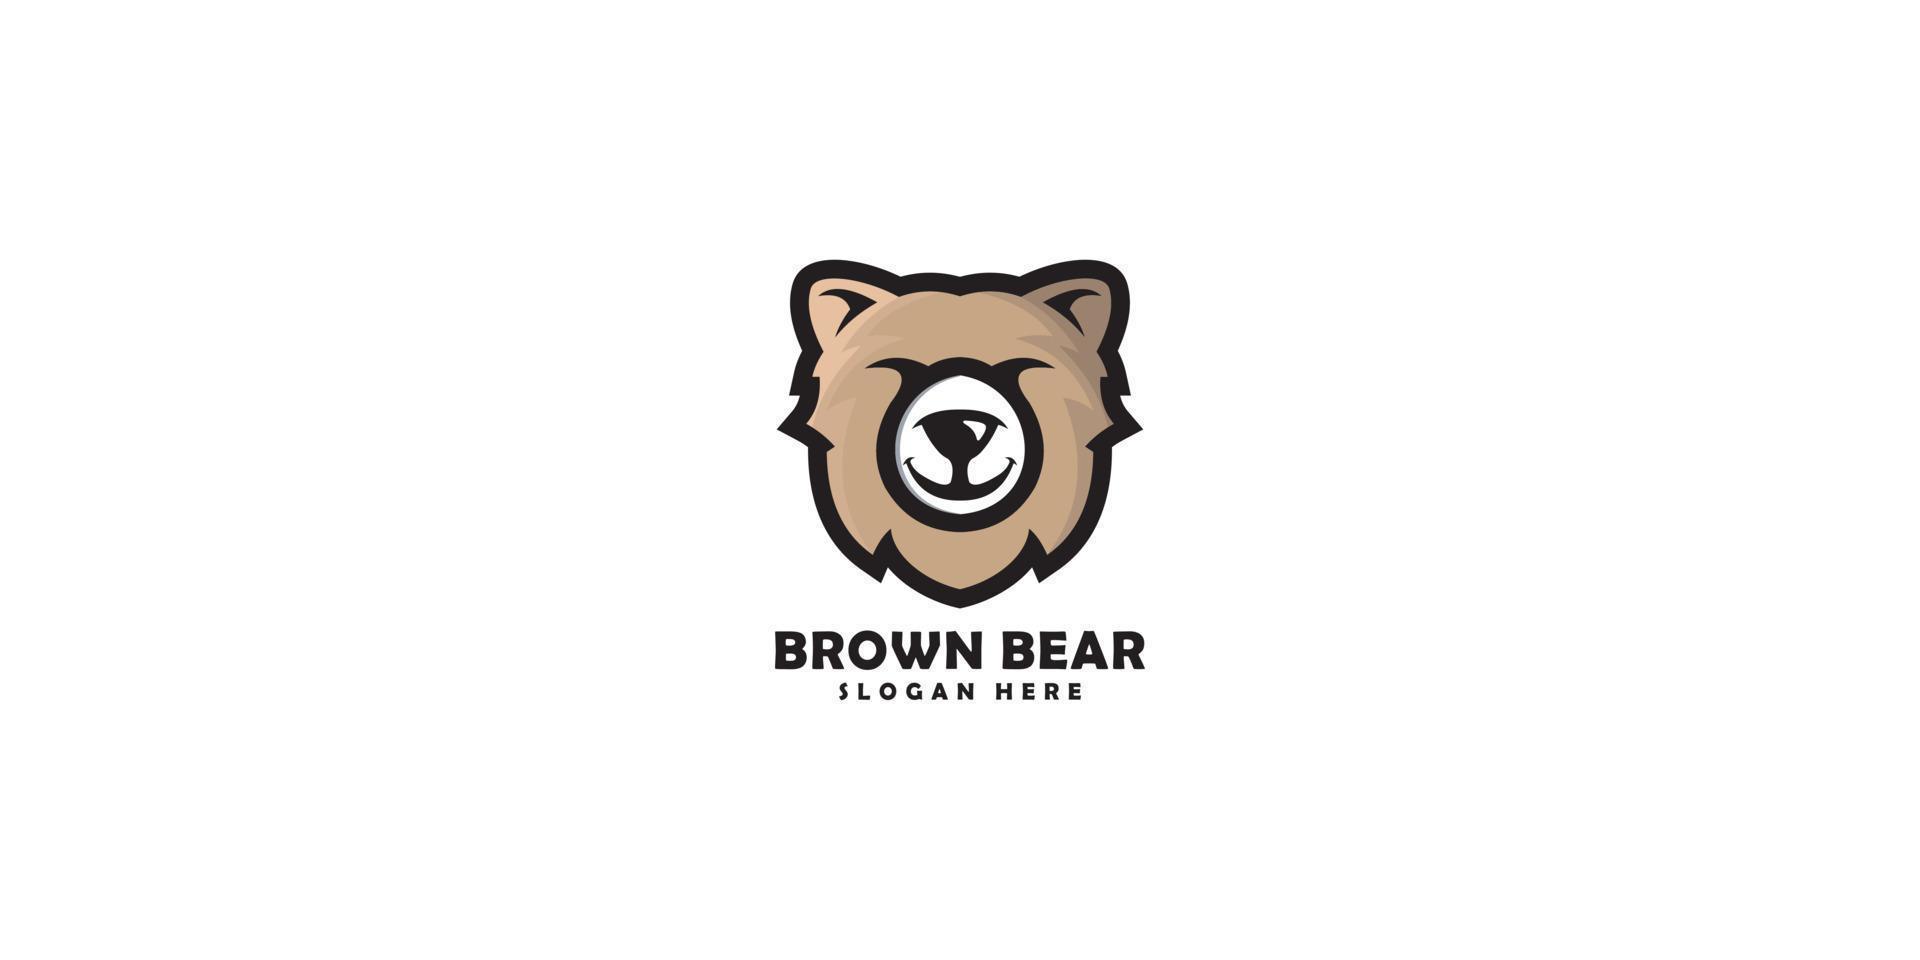 disegno vettoriale del logo dell'orso della testa